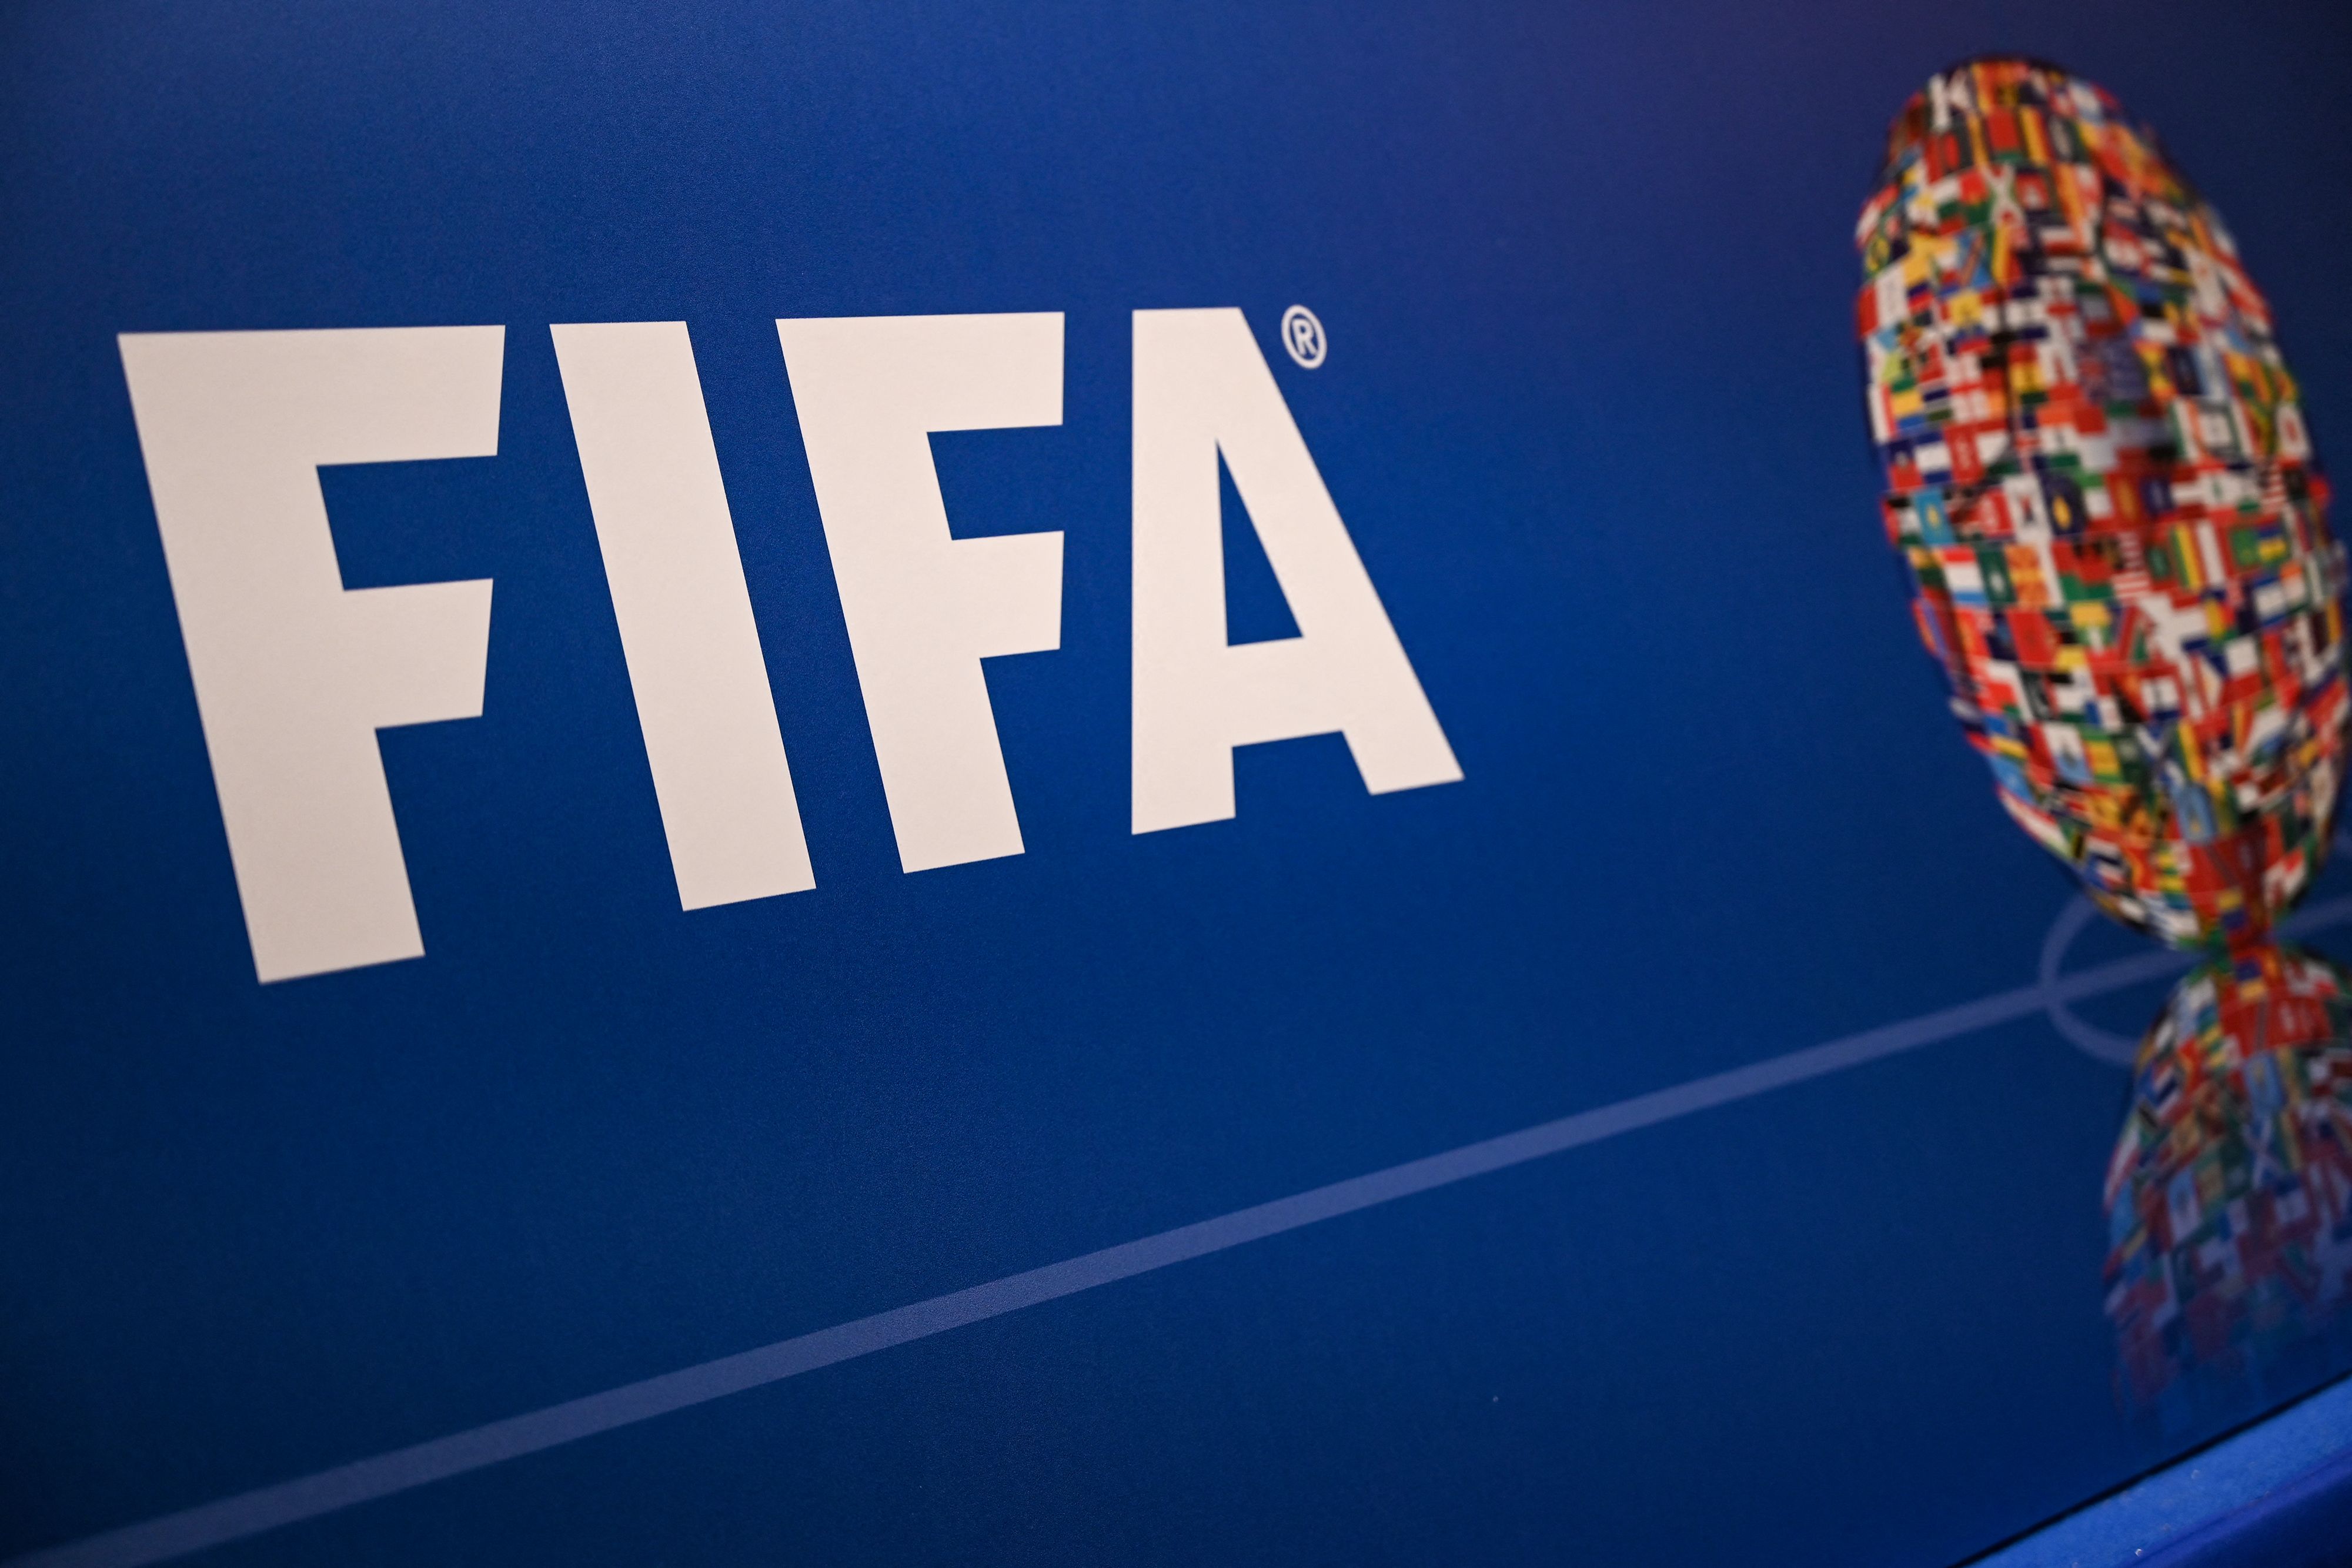 La Fifa junto a Uefa mostraron su preocupación y repudio ante el ataque terrorista que, por fortuna, no dejó heridos. (Foto Prensa Libre: AFP)